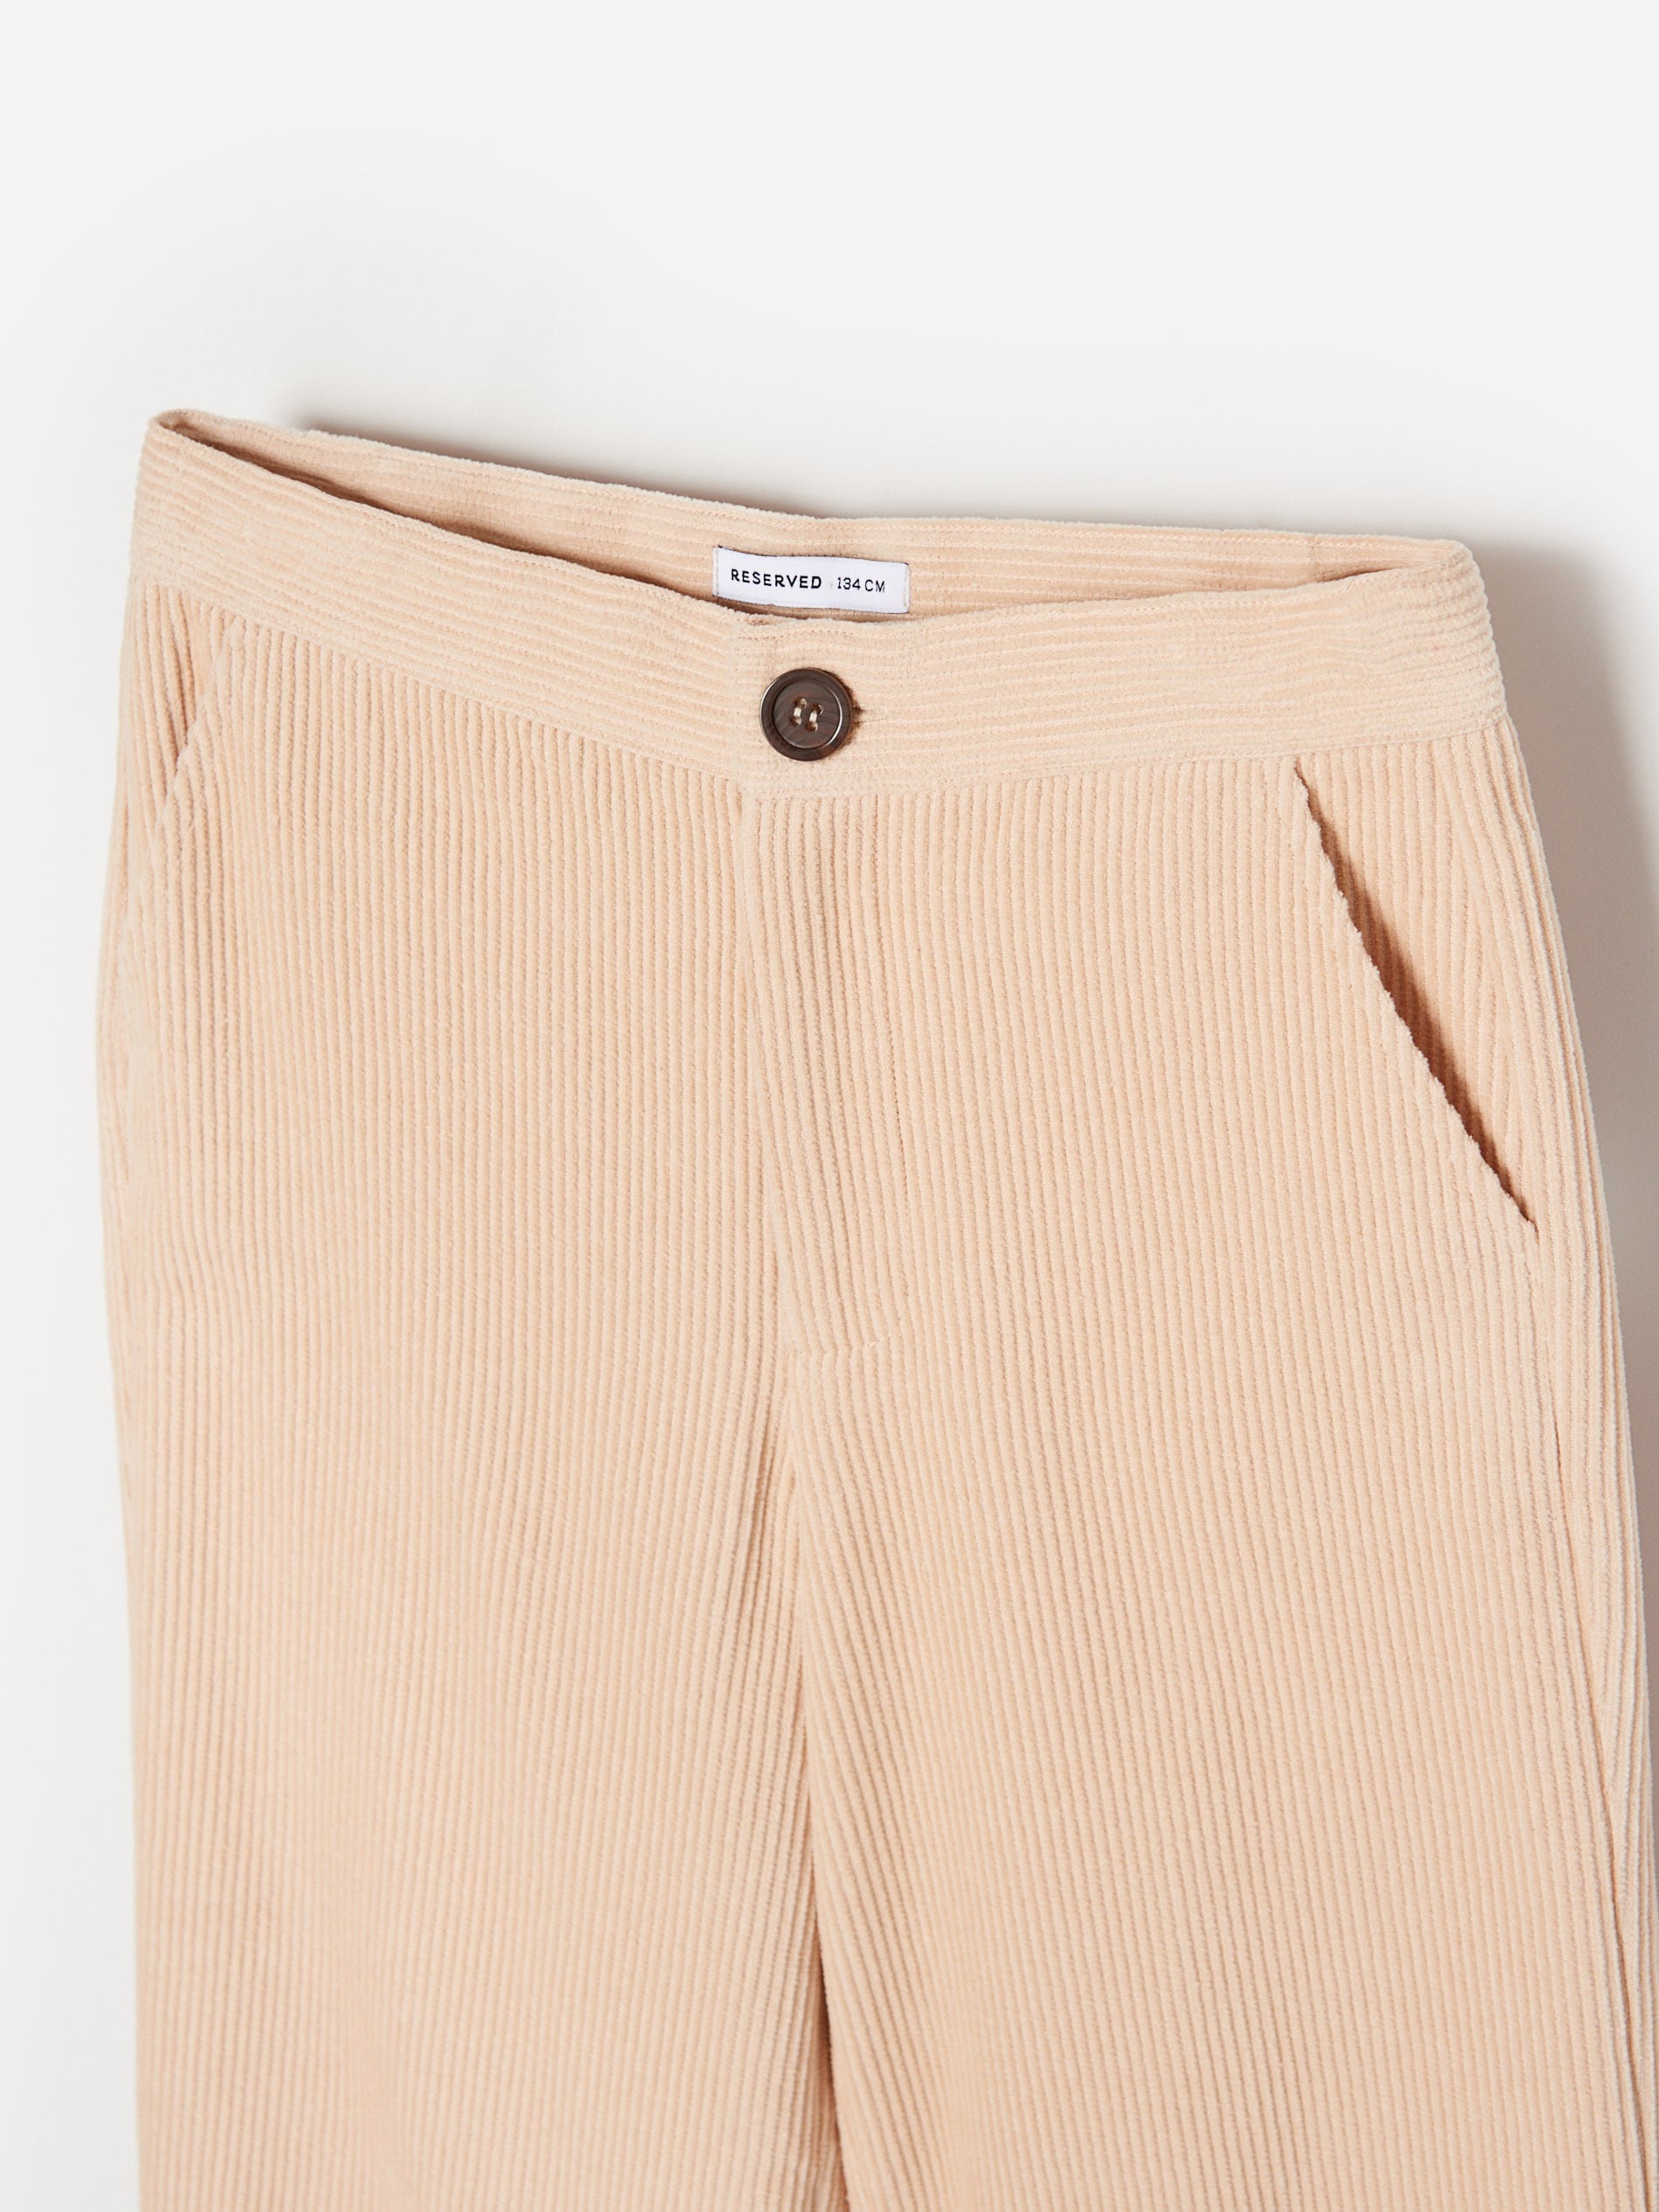 Pantaloni Reservet Casual (10430) photo 0